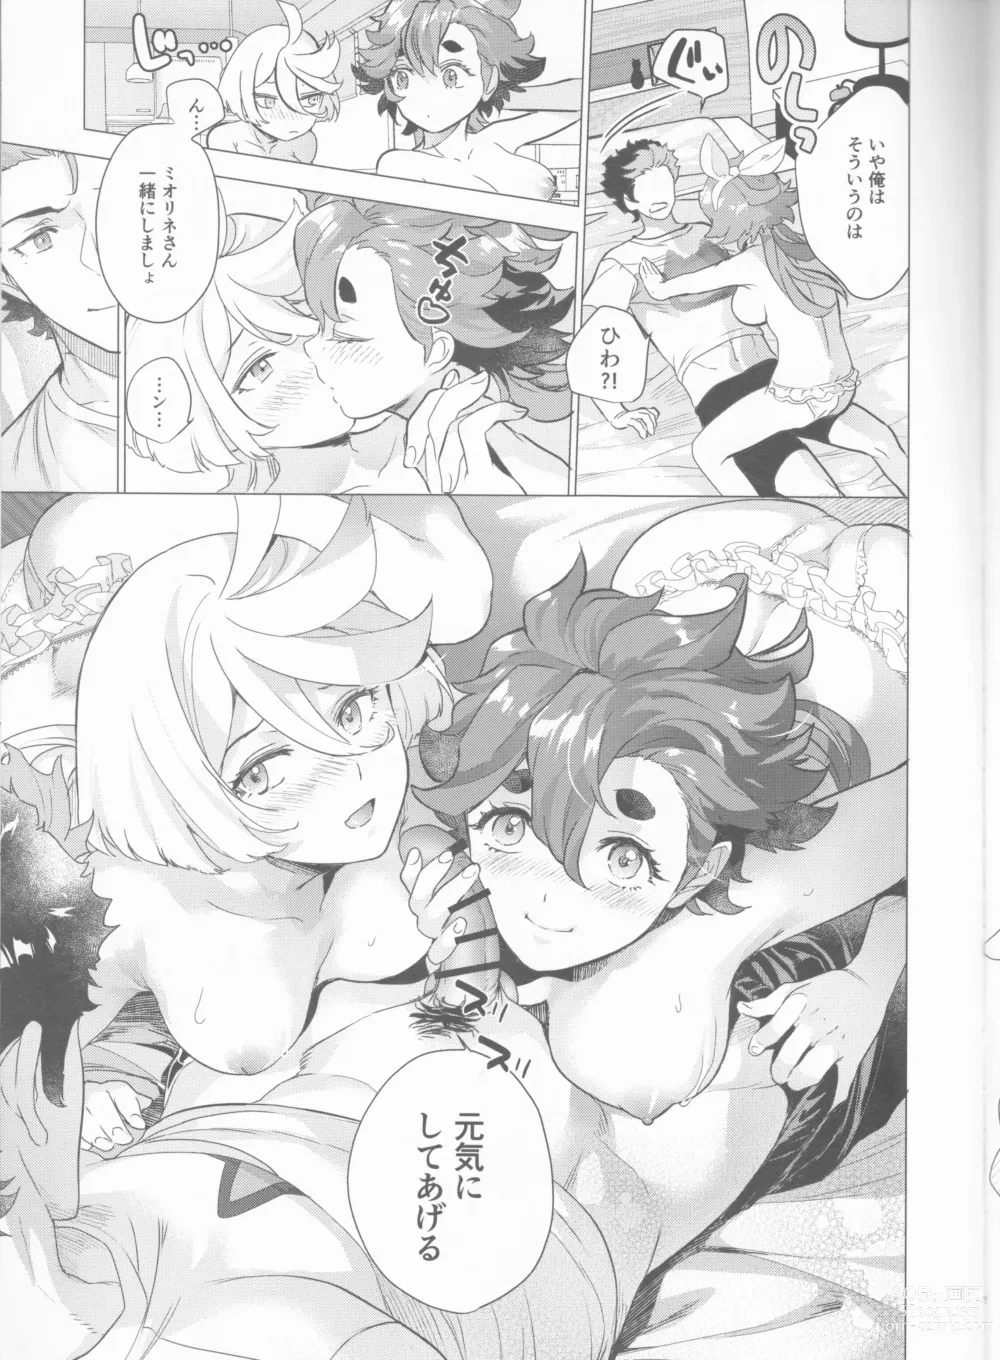 Page 8 of doujinshi Inu o Hirotte mo Ii desu ka